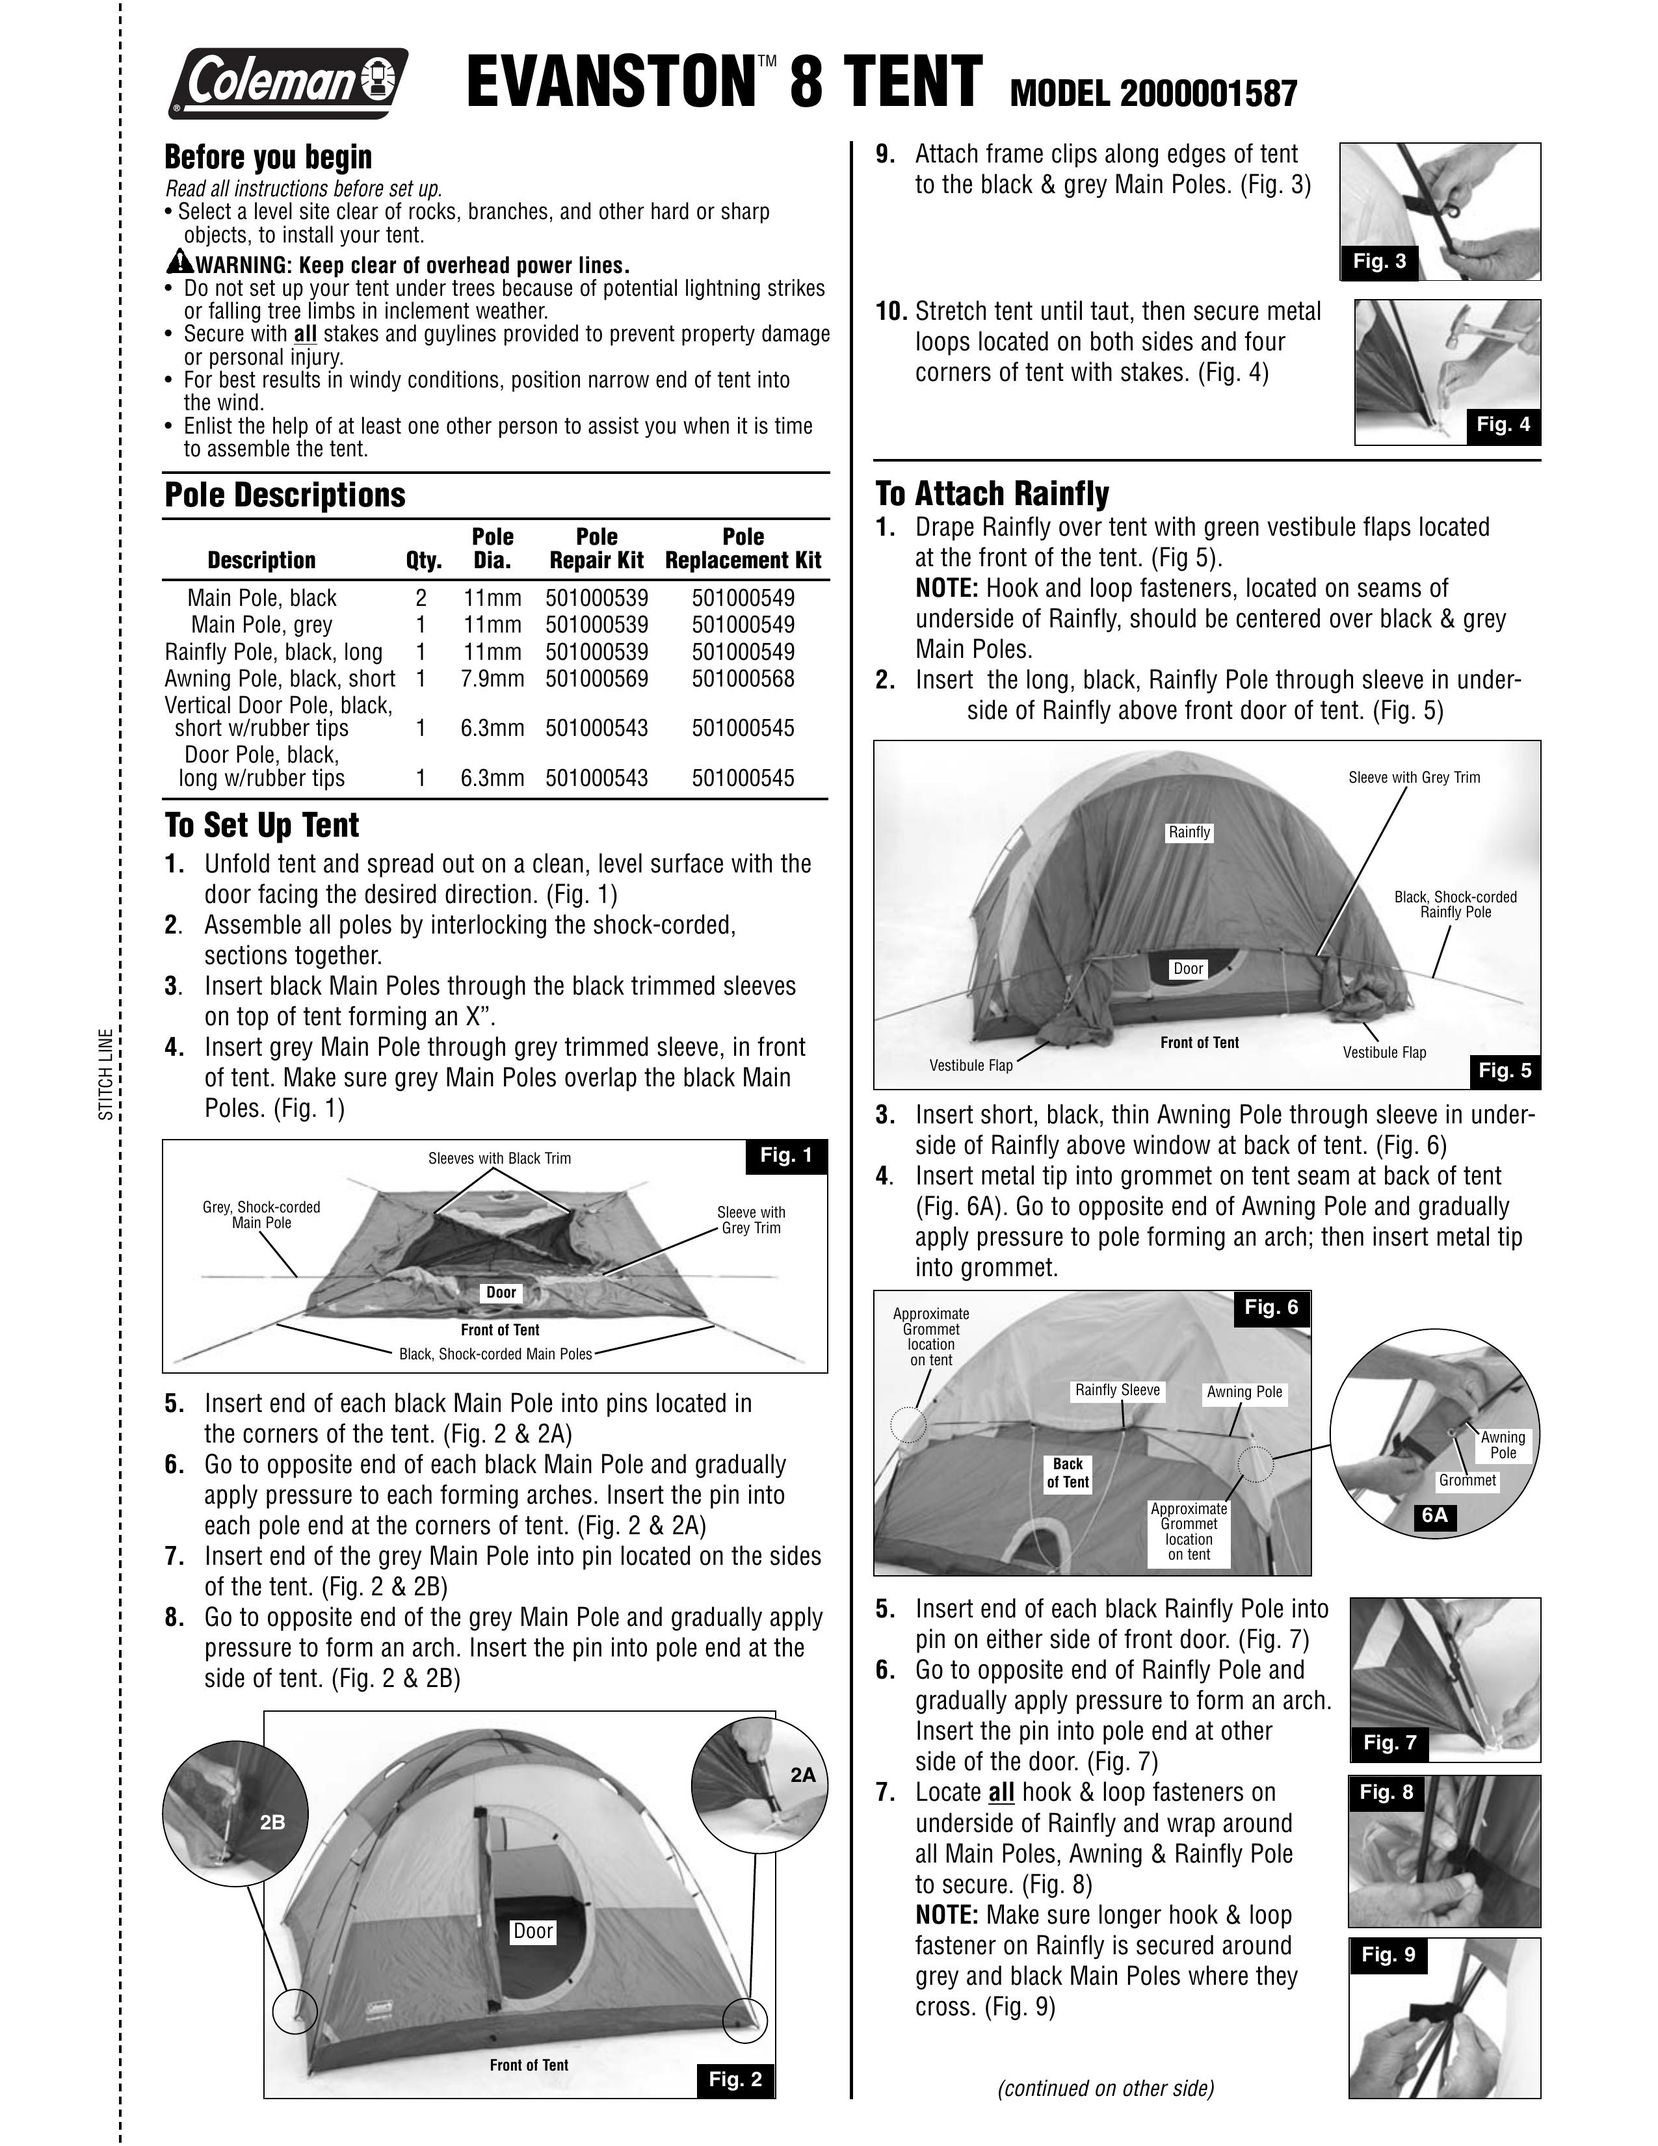 Coleman 2000001587 Tent User Manual